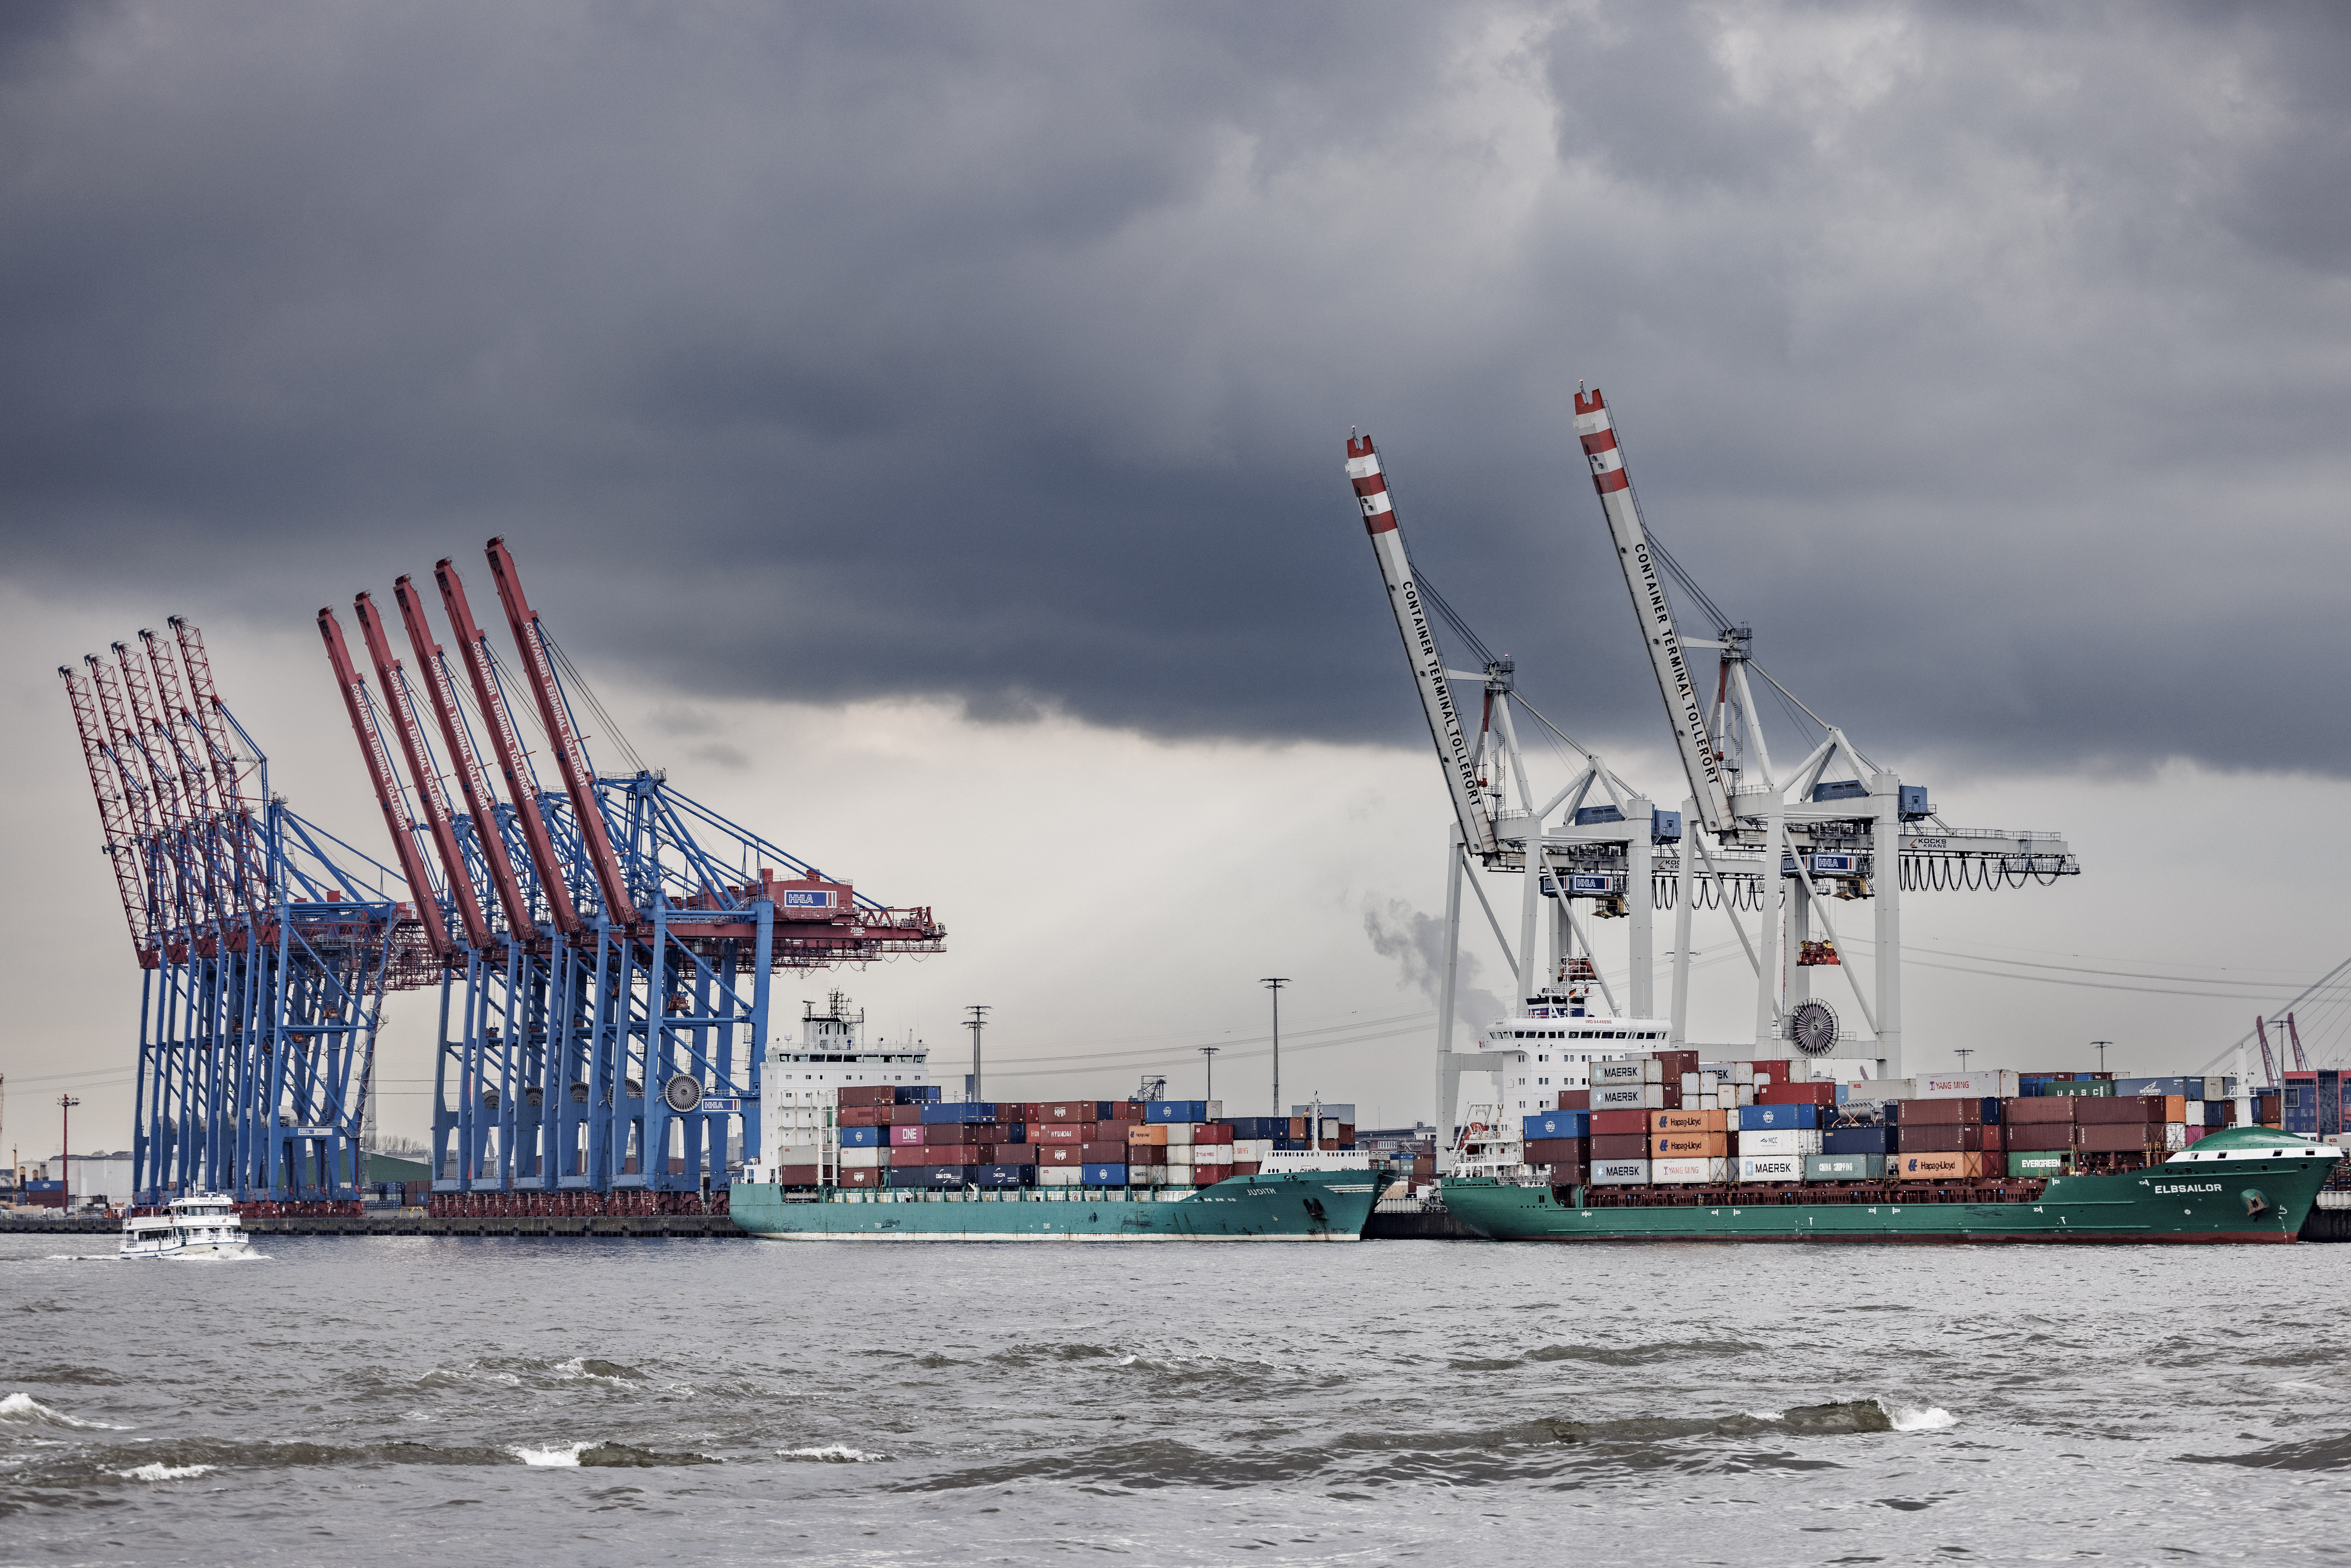 Dunkle Regenwolken aus denen sich teils kräftige Schauer ergießen, ziehen über den Hamburger Hafen.